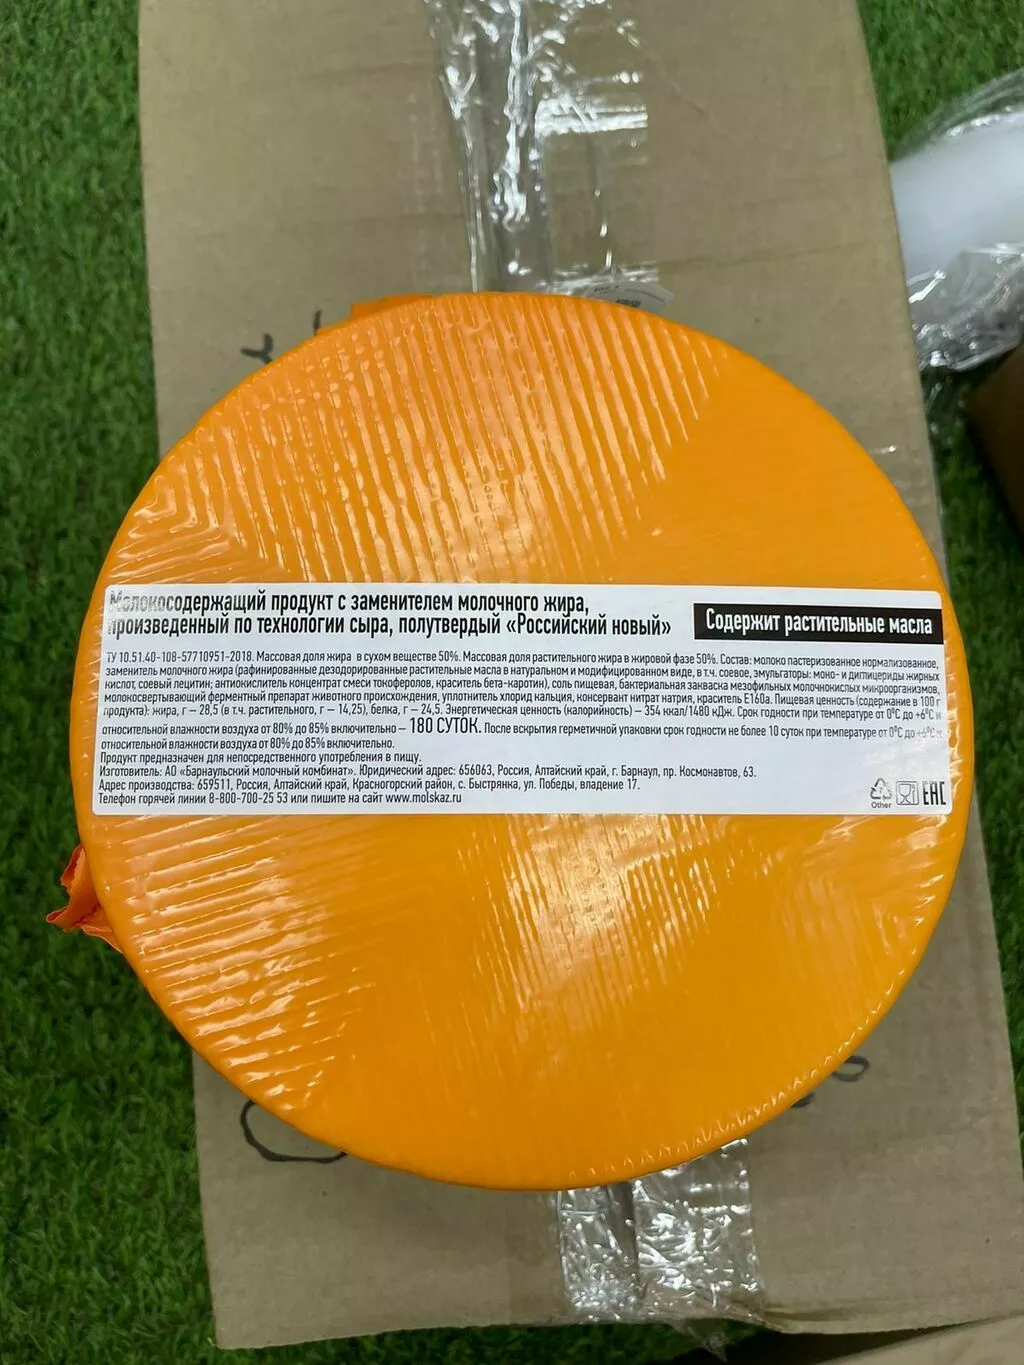 сырный продукт российский цилиндр 3.7 кг в Москве